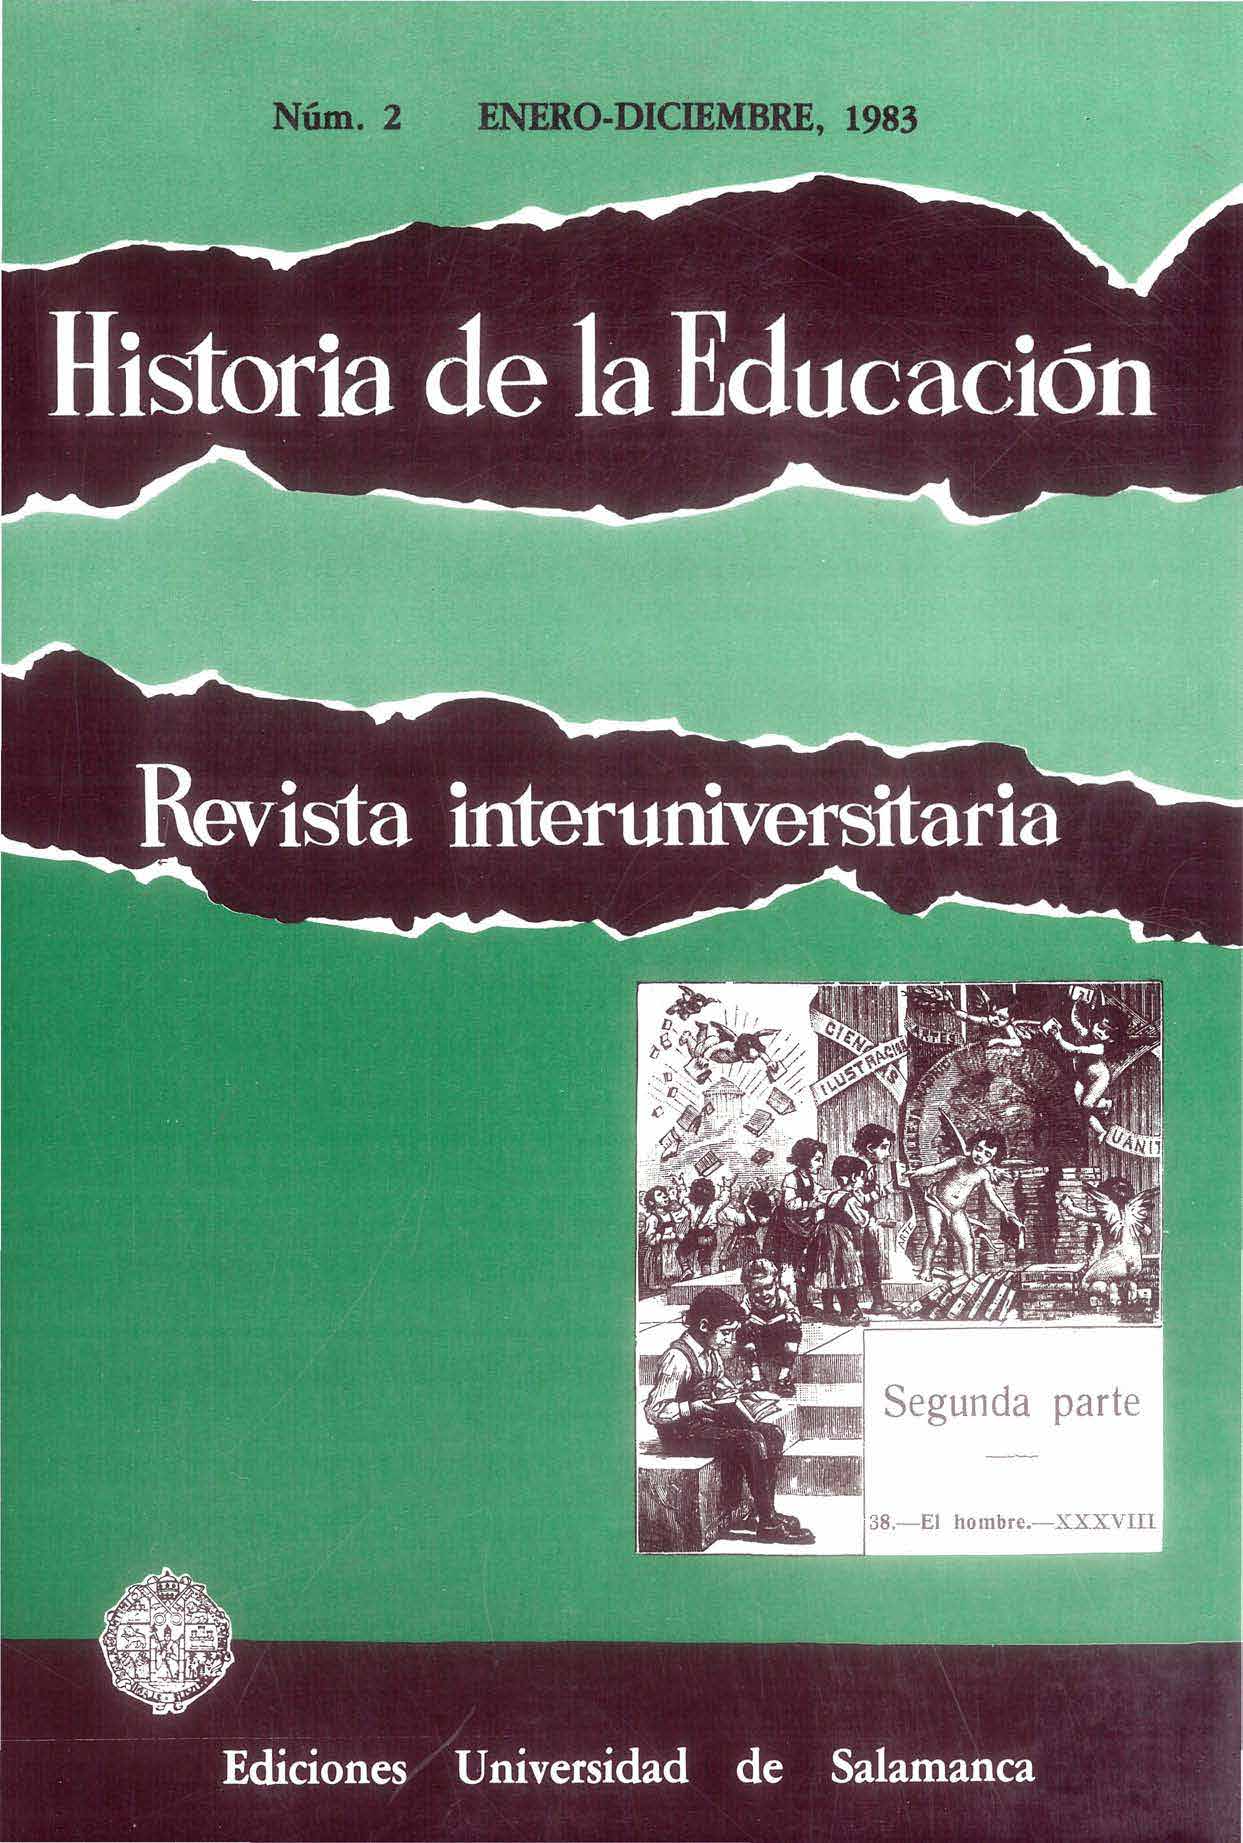                         Ver Vol. 2 (1983): Innovaciones educativas en la España del siglo XIX
                    